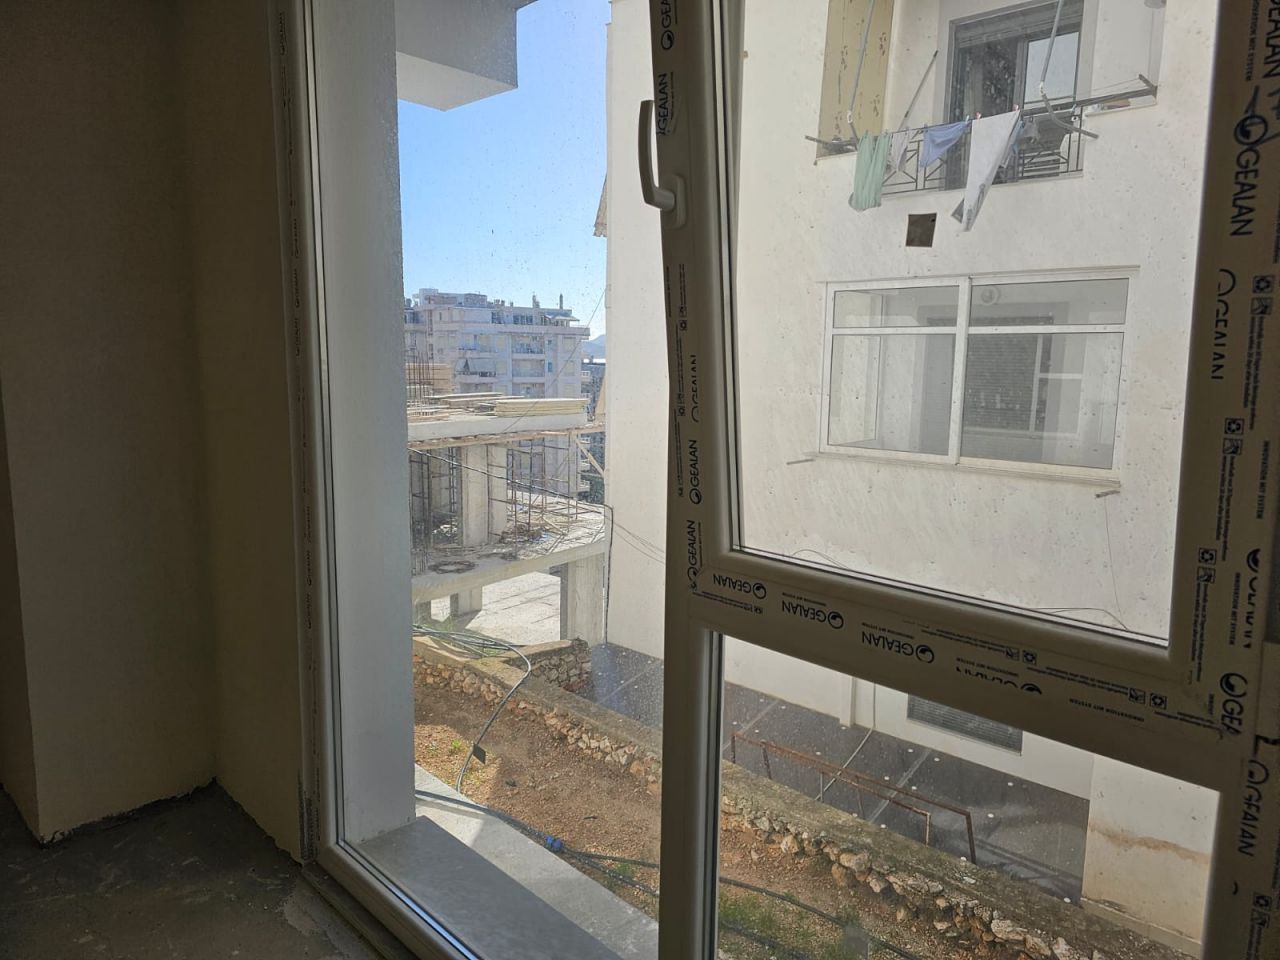 Maisonette-Wohnung Zum Verkauf In Saranda Albanien